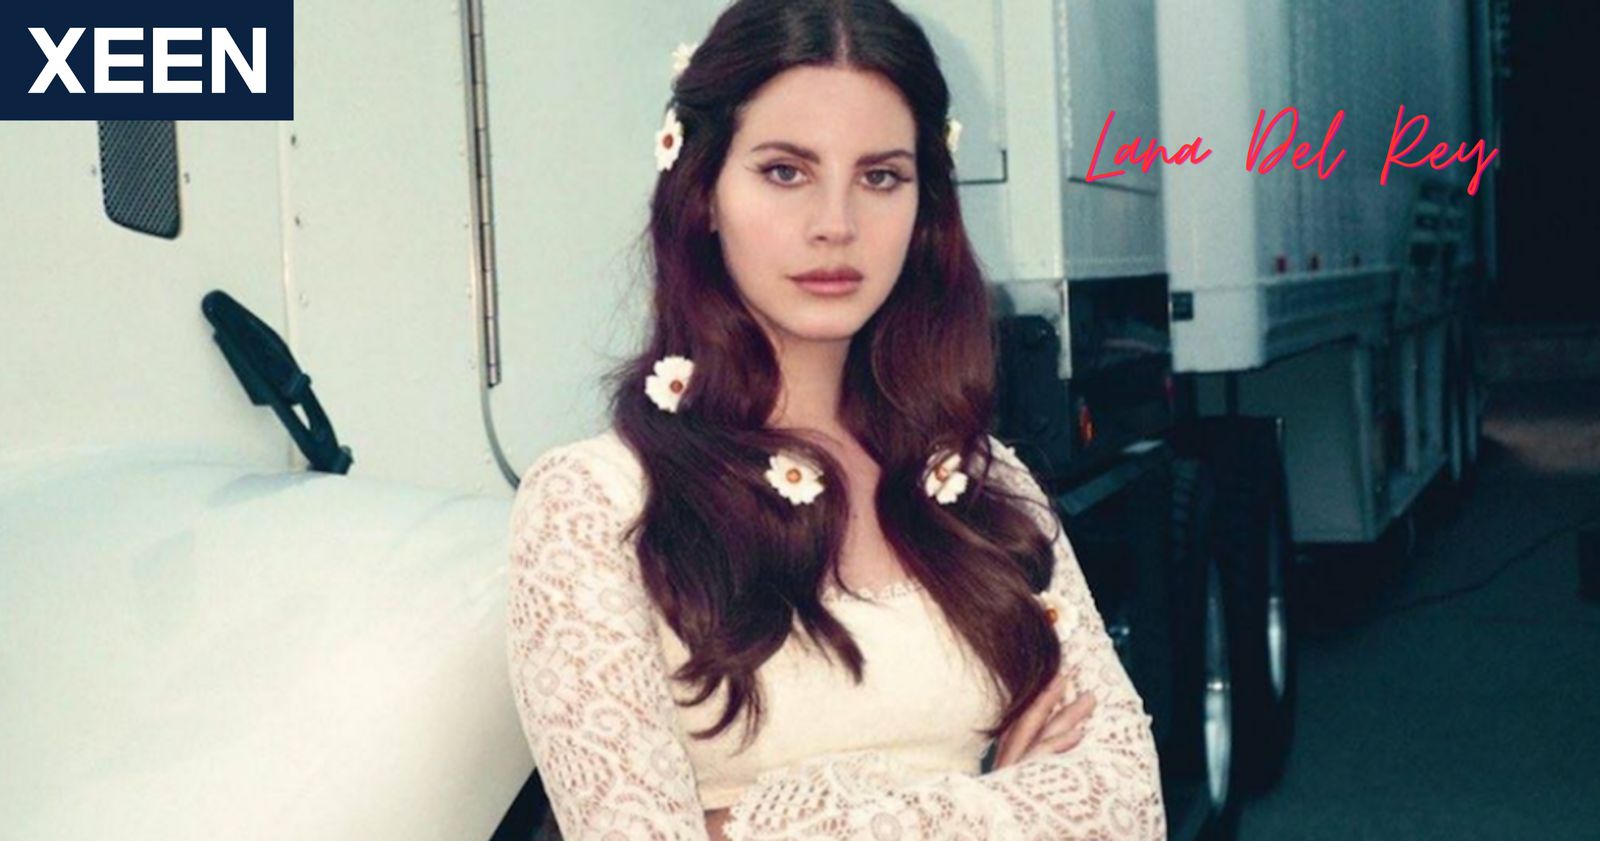 ประวัติและแนวเพลง Lana Del Rey ตัวแม่แห่งวงการ Sad Girls